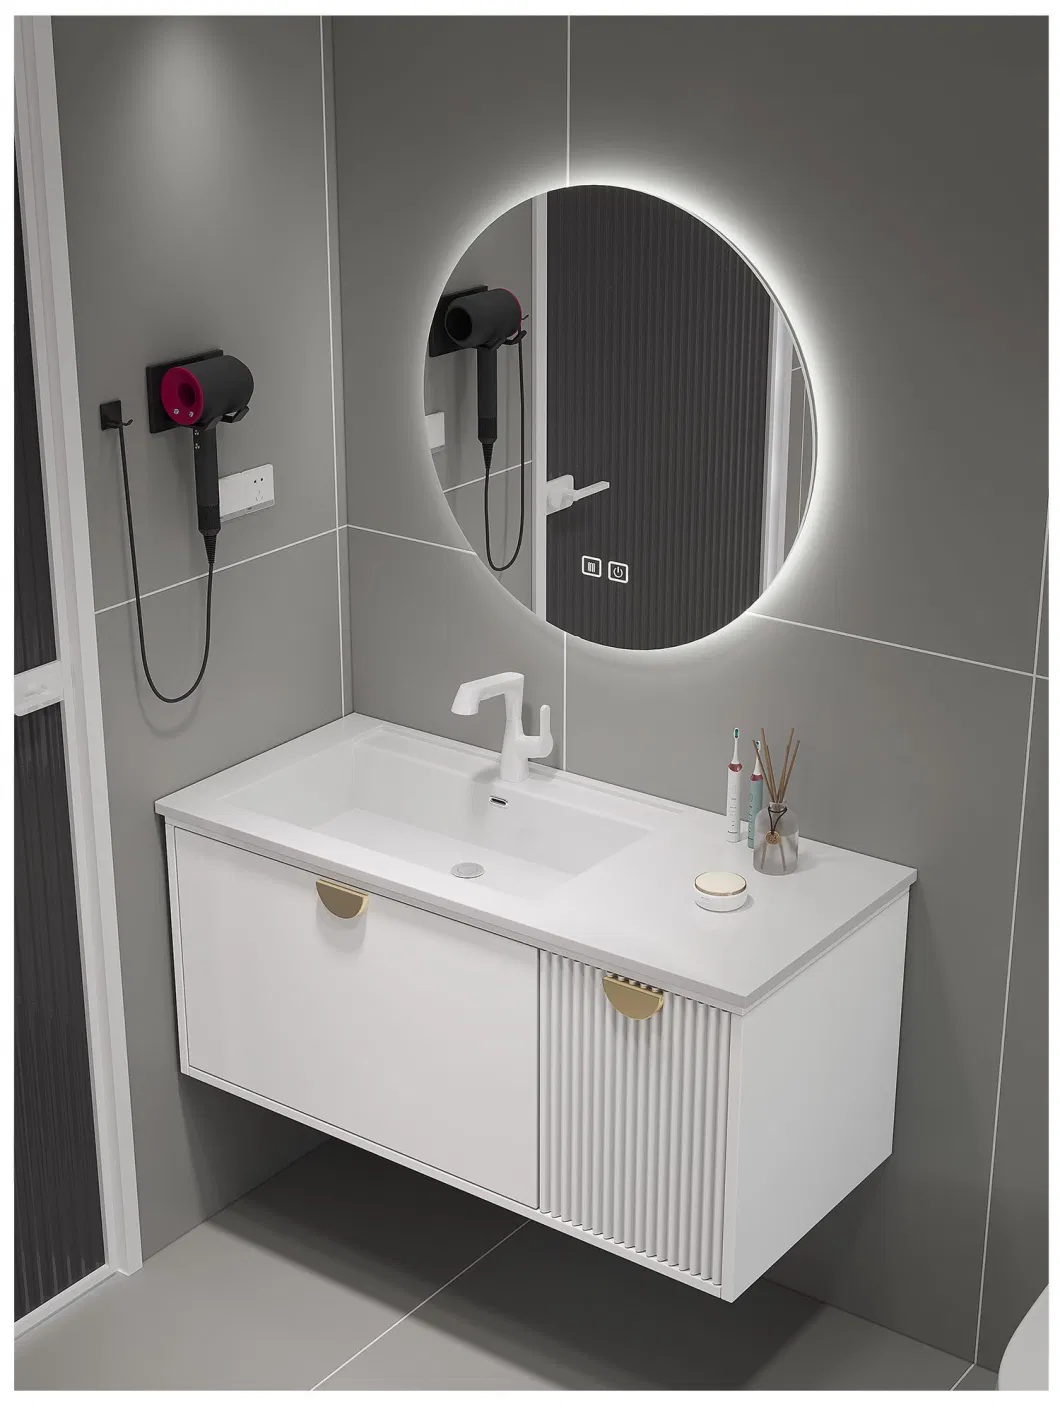 Home Bathroom Furniture Luxury Washroom High Quality Bathroom Vanity Cabinet Bathroom Cabinet with Mirror Light